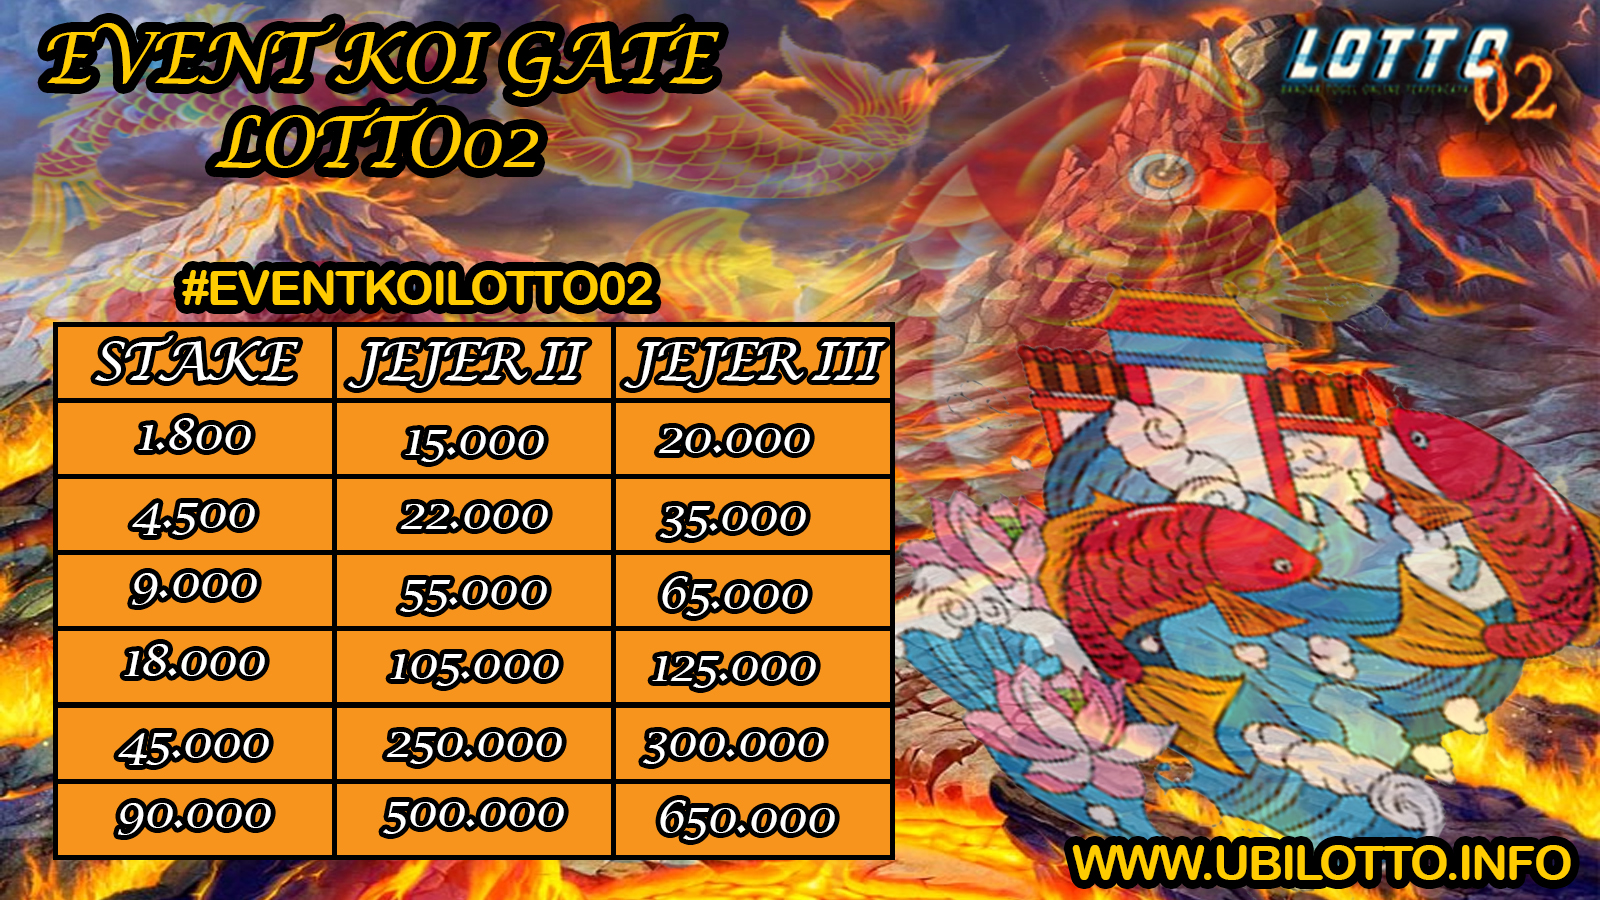 Event koi Gate Lotto02